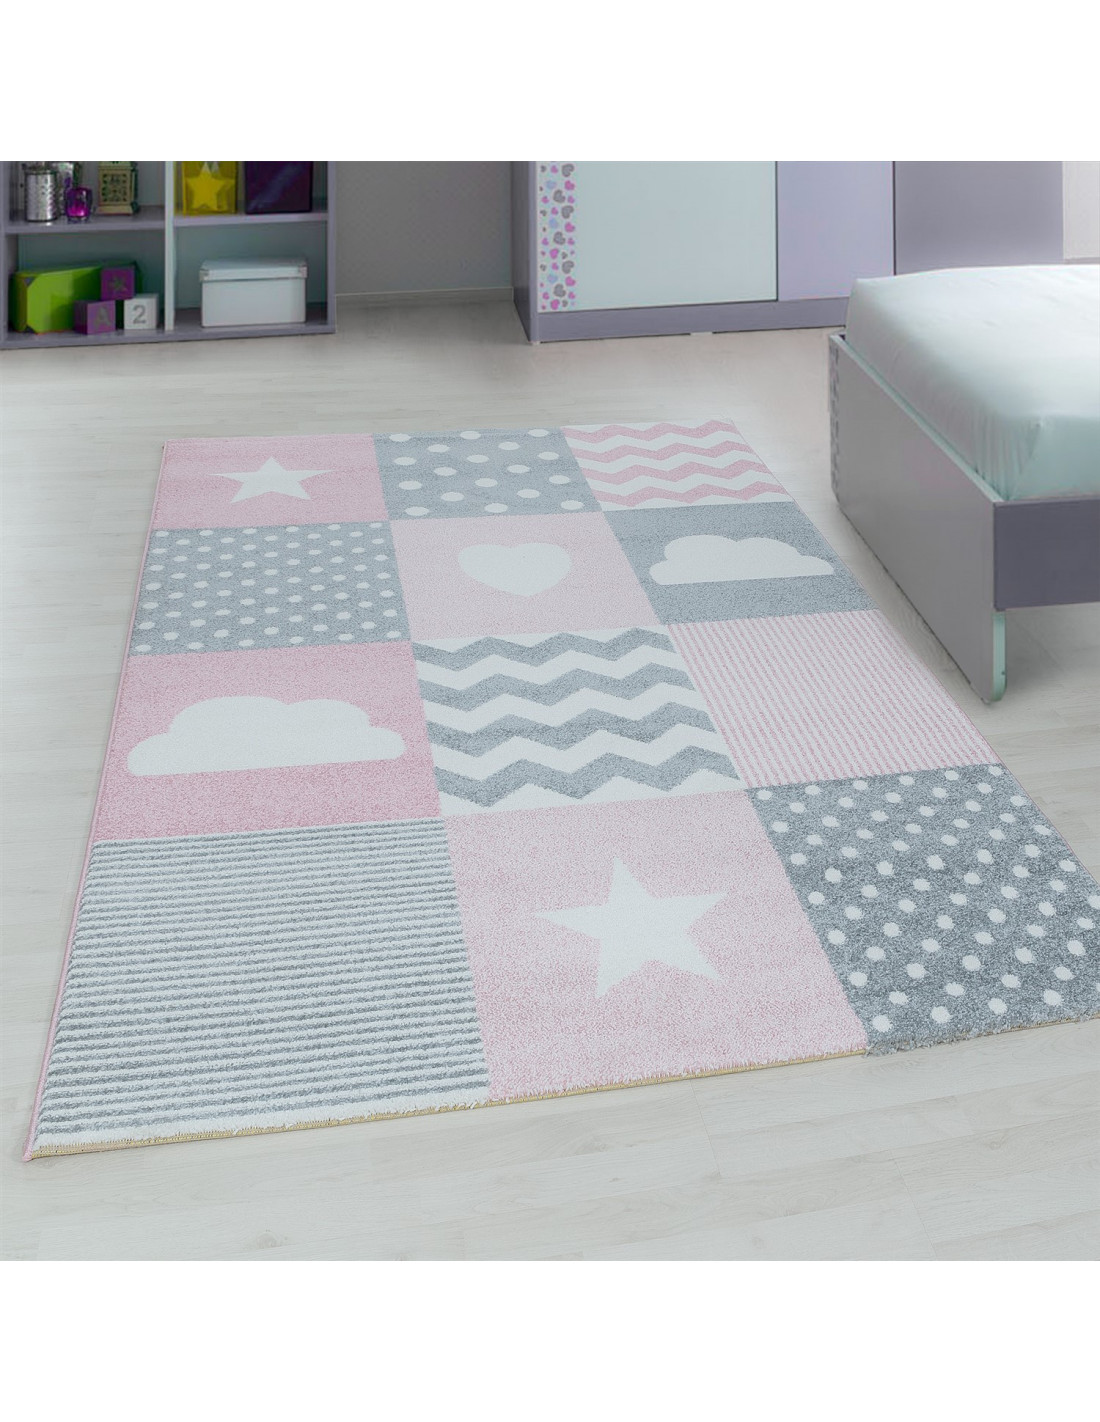 Designerski dywanik do pokoju dziecięcego z różowymi motywami